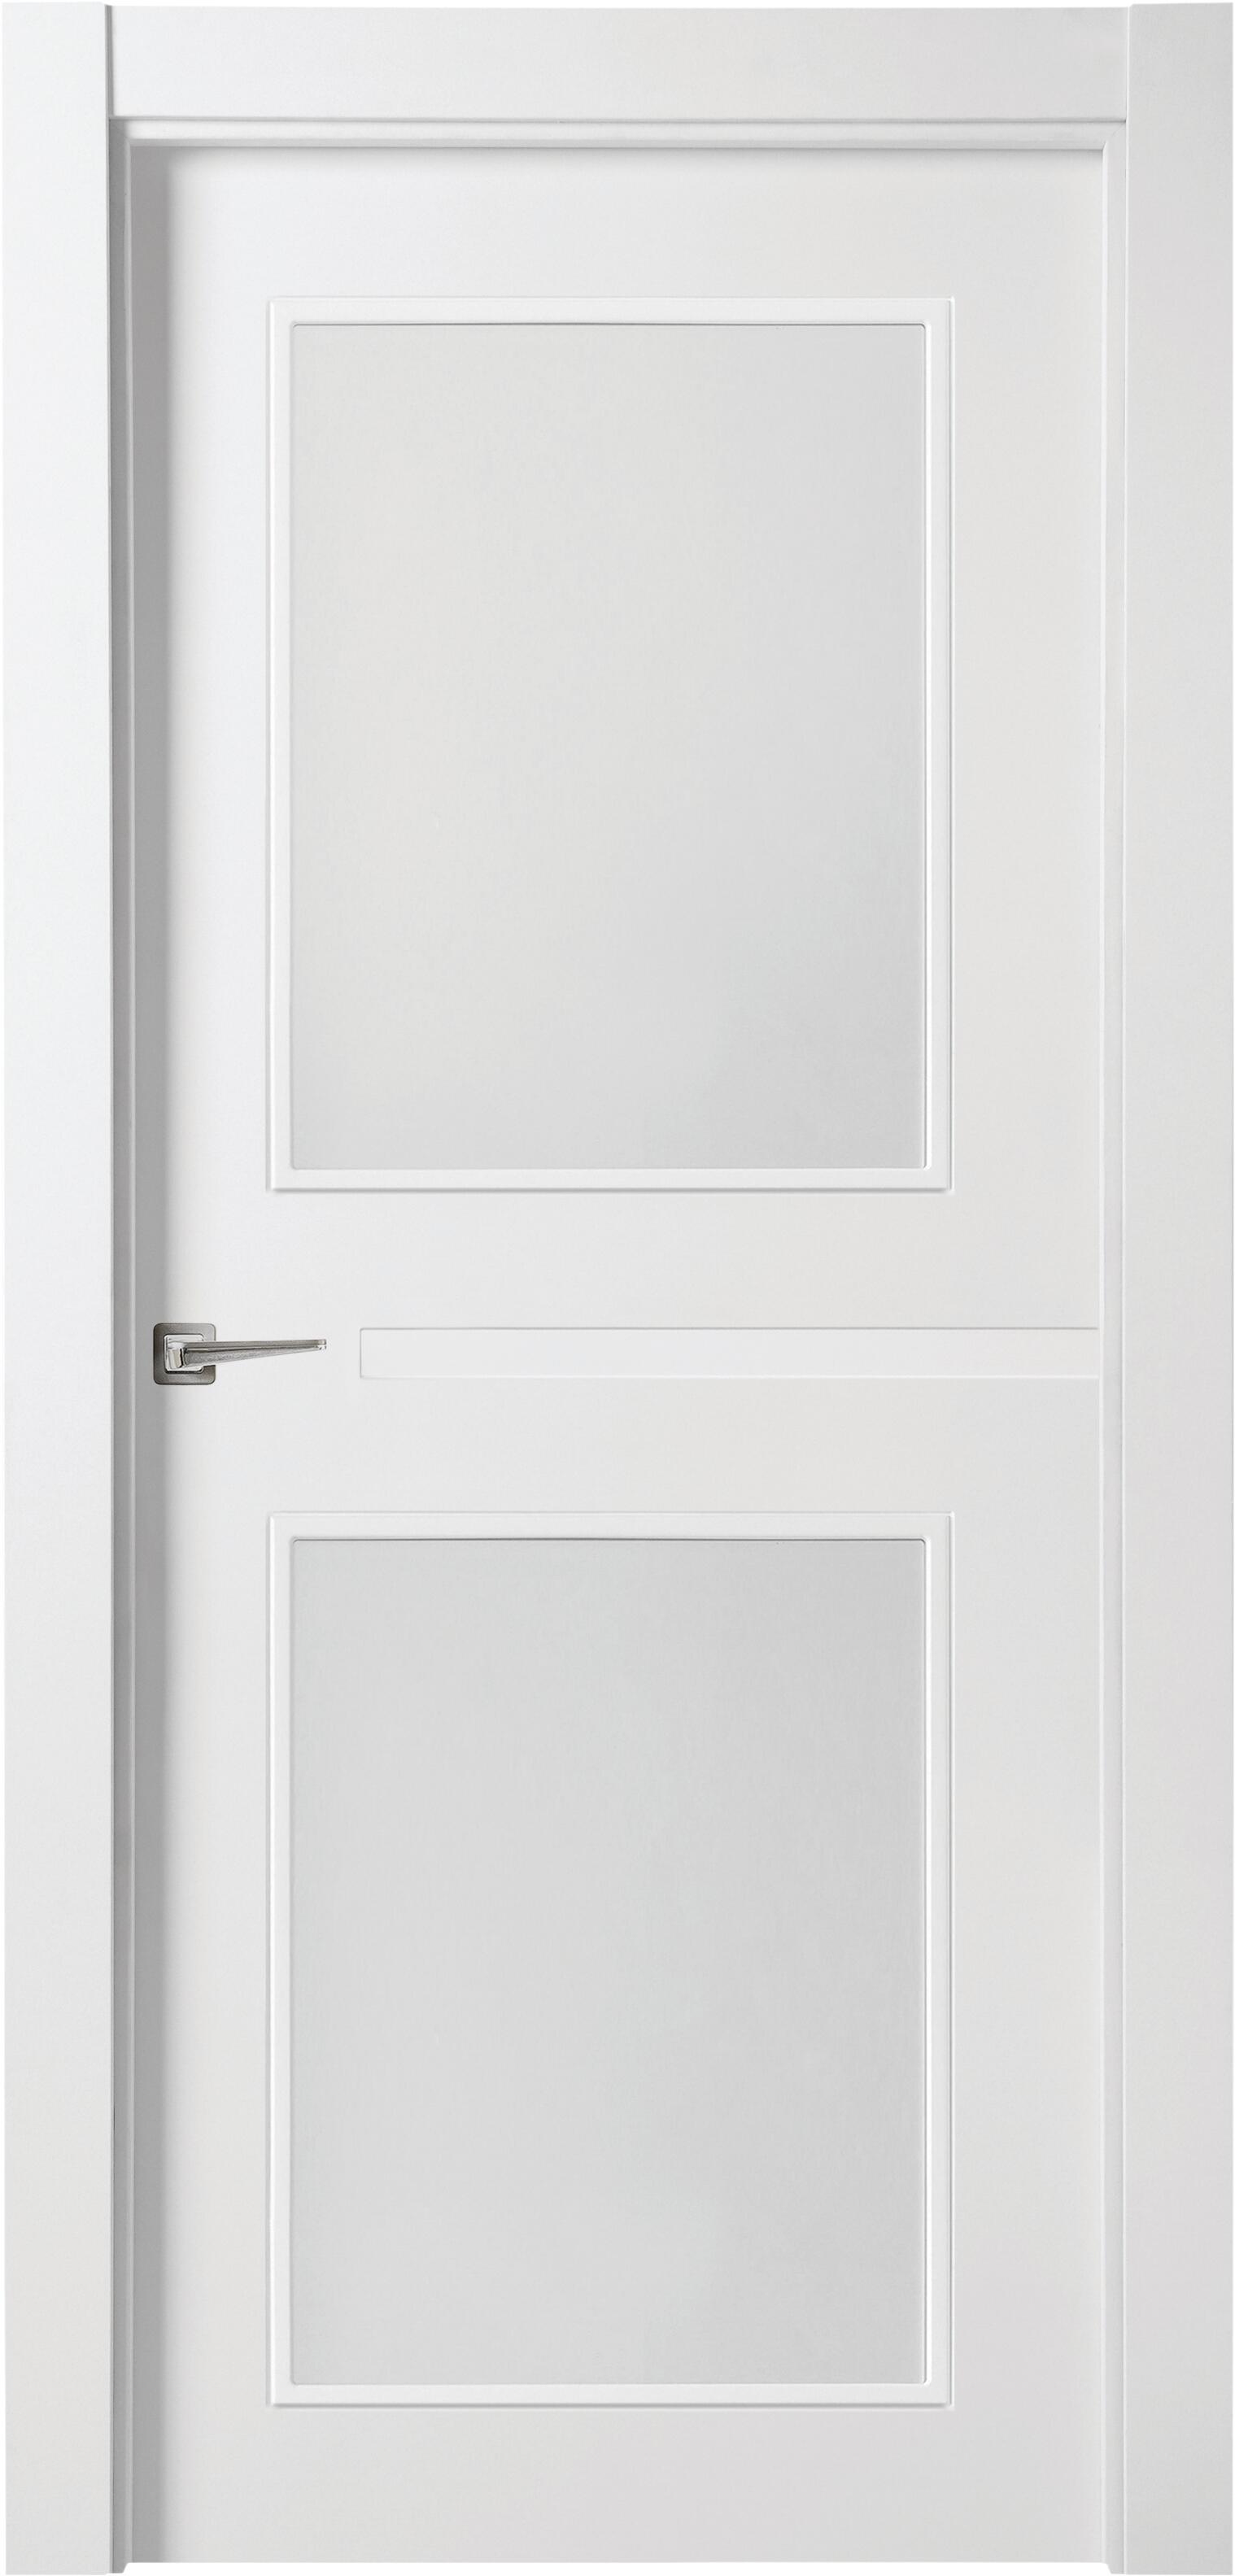 Puerta denver blanco apertura derecha con cristal 11x92,5cm